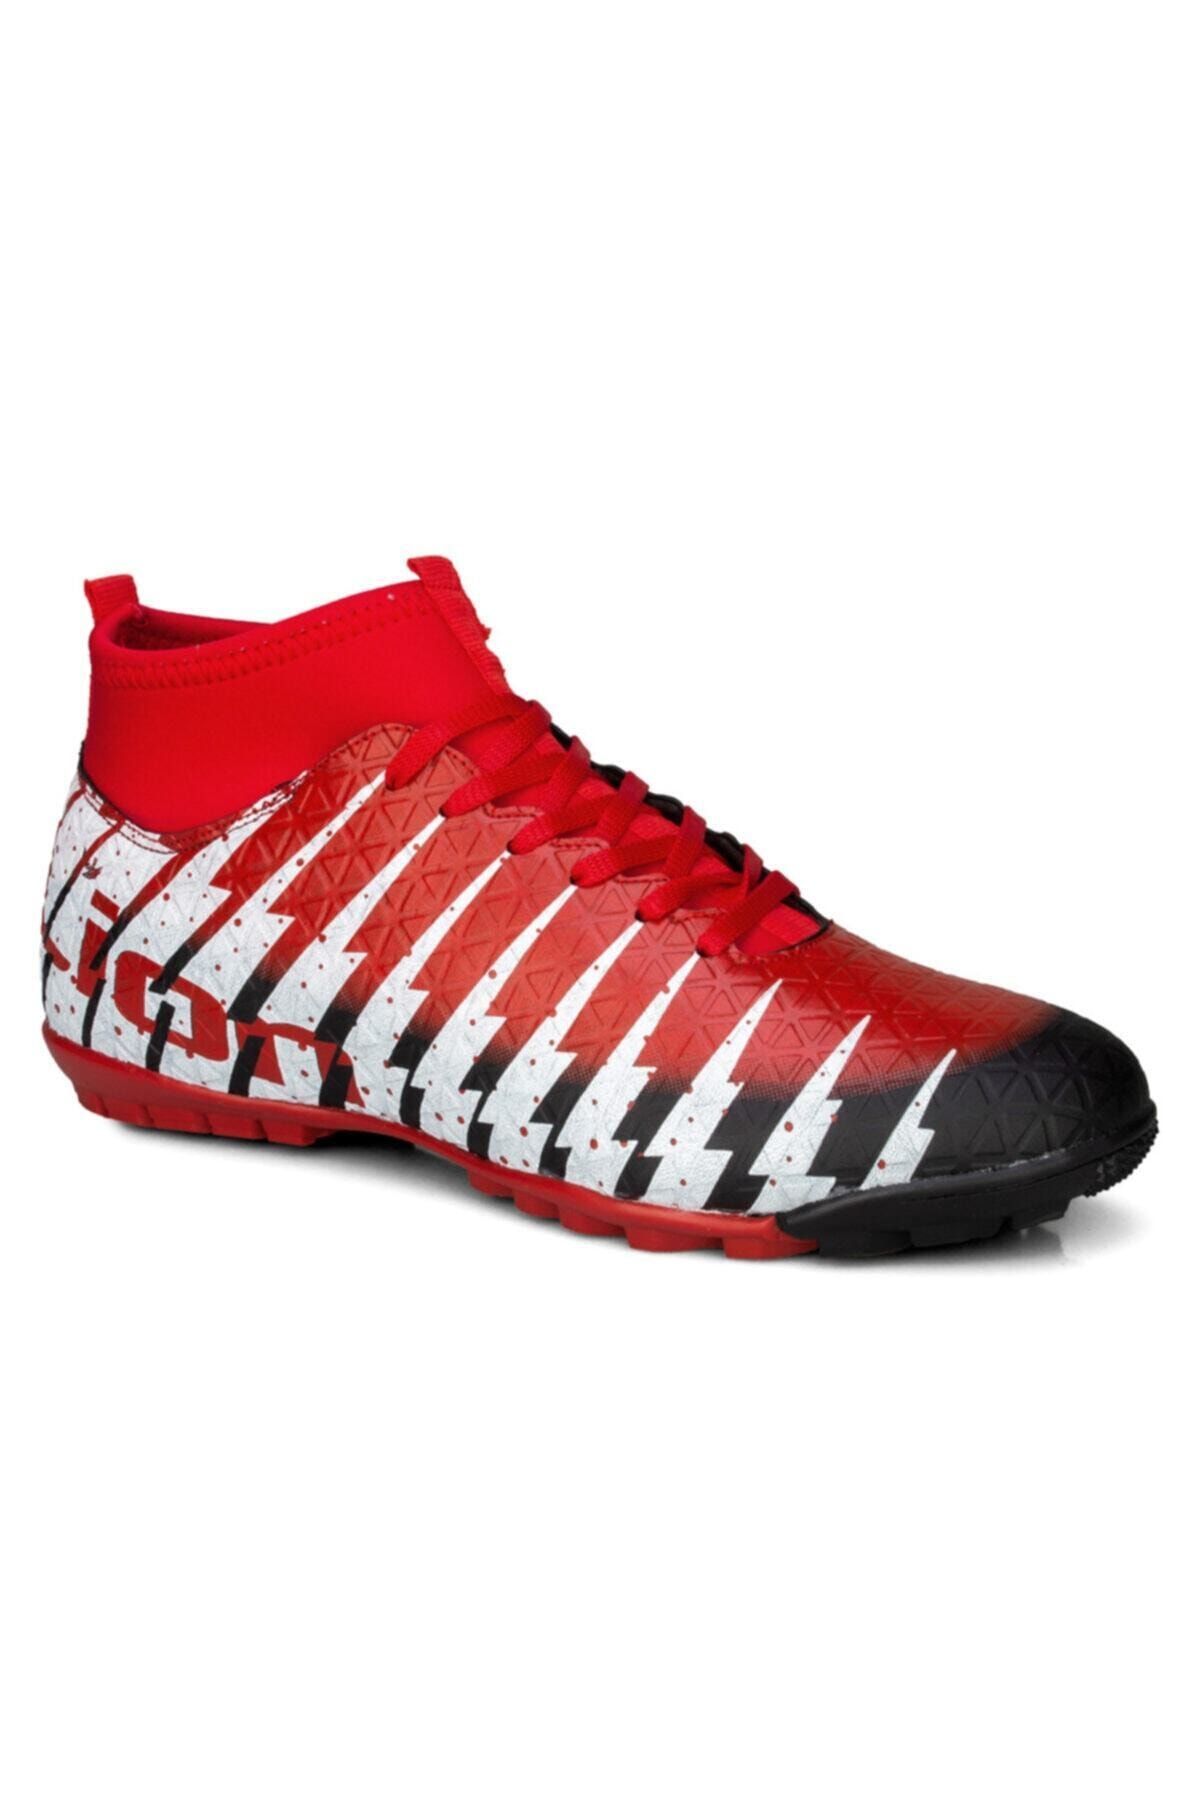 Lion Siyah Kırmızı Bilekli Halı Saha Futbol Ayakkabısı